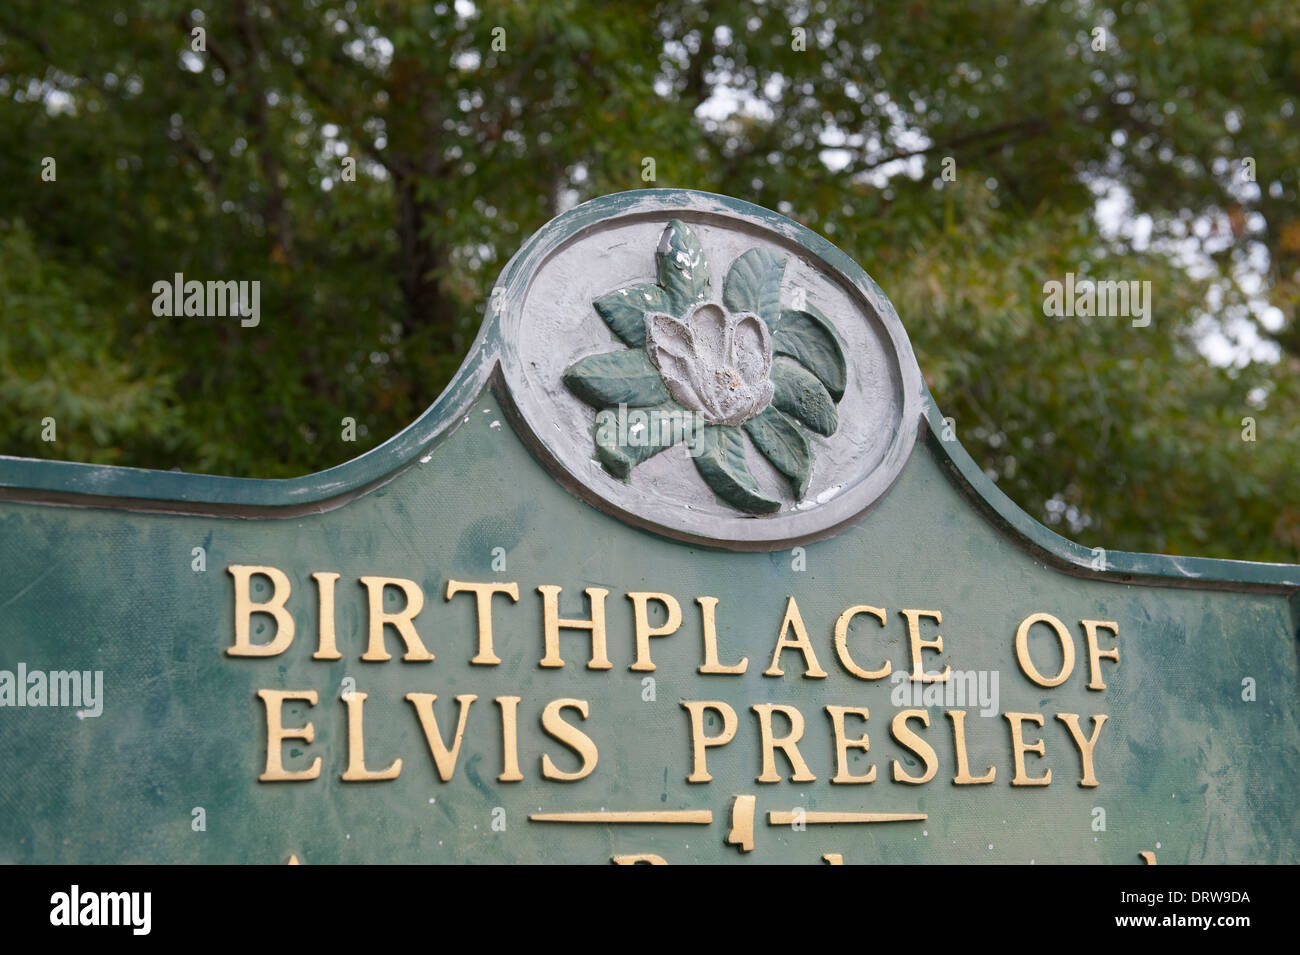 USA Mississippi MS Miss Elvis Presley Tupelo berceau accueil signe de naissance Banque D'Images